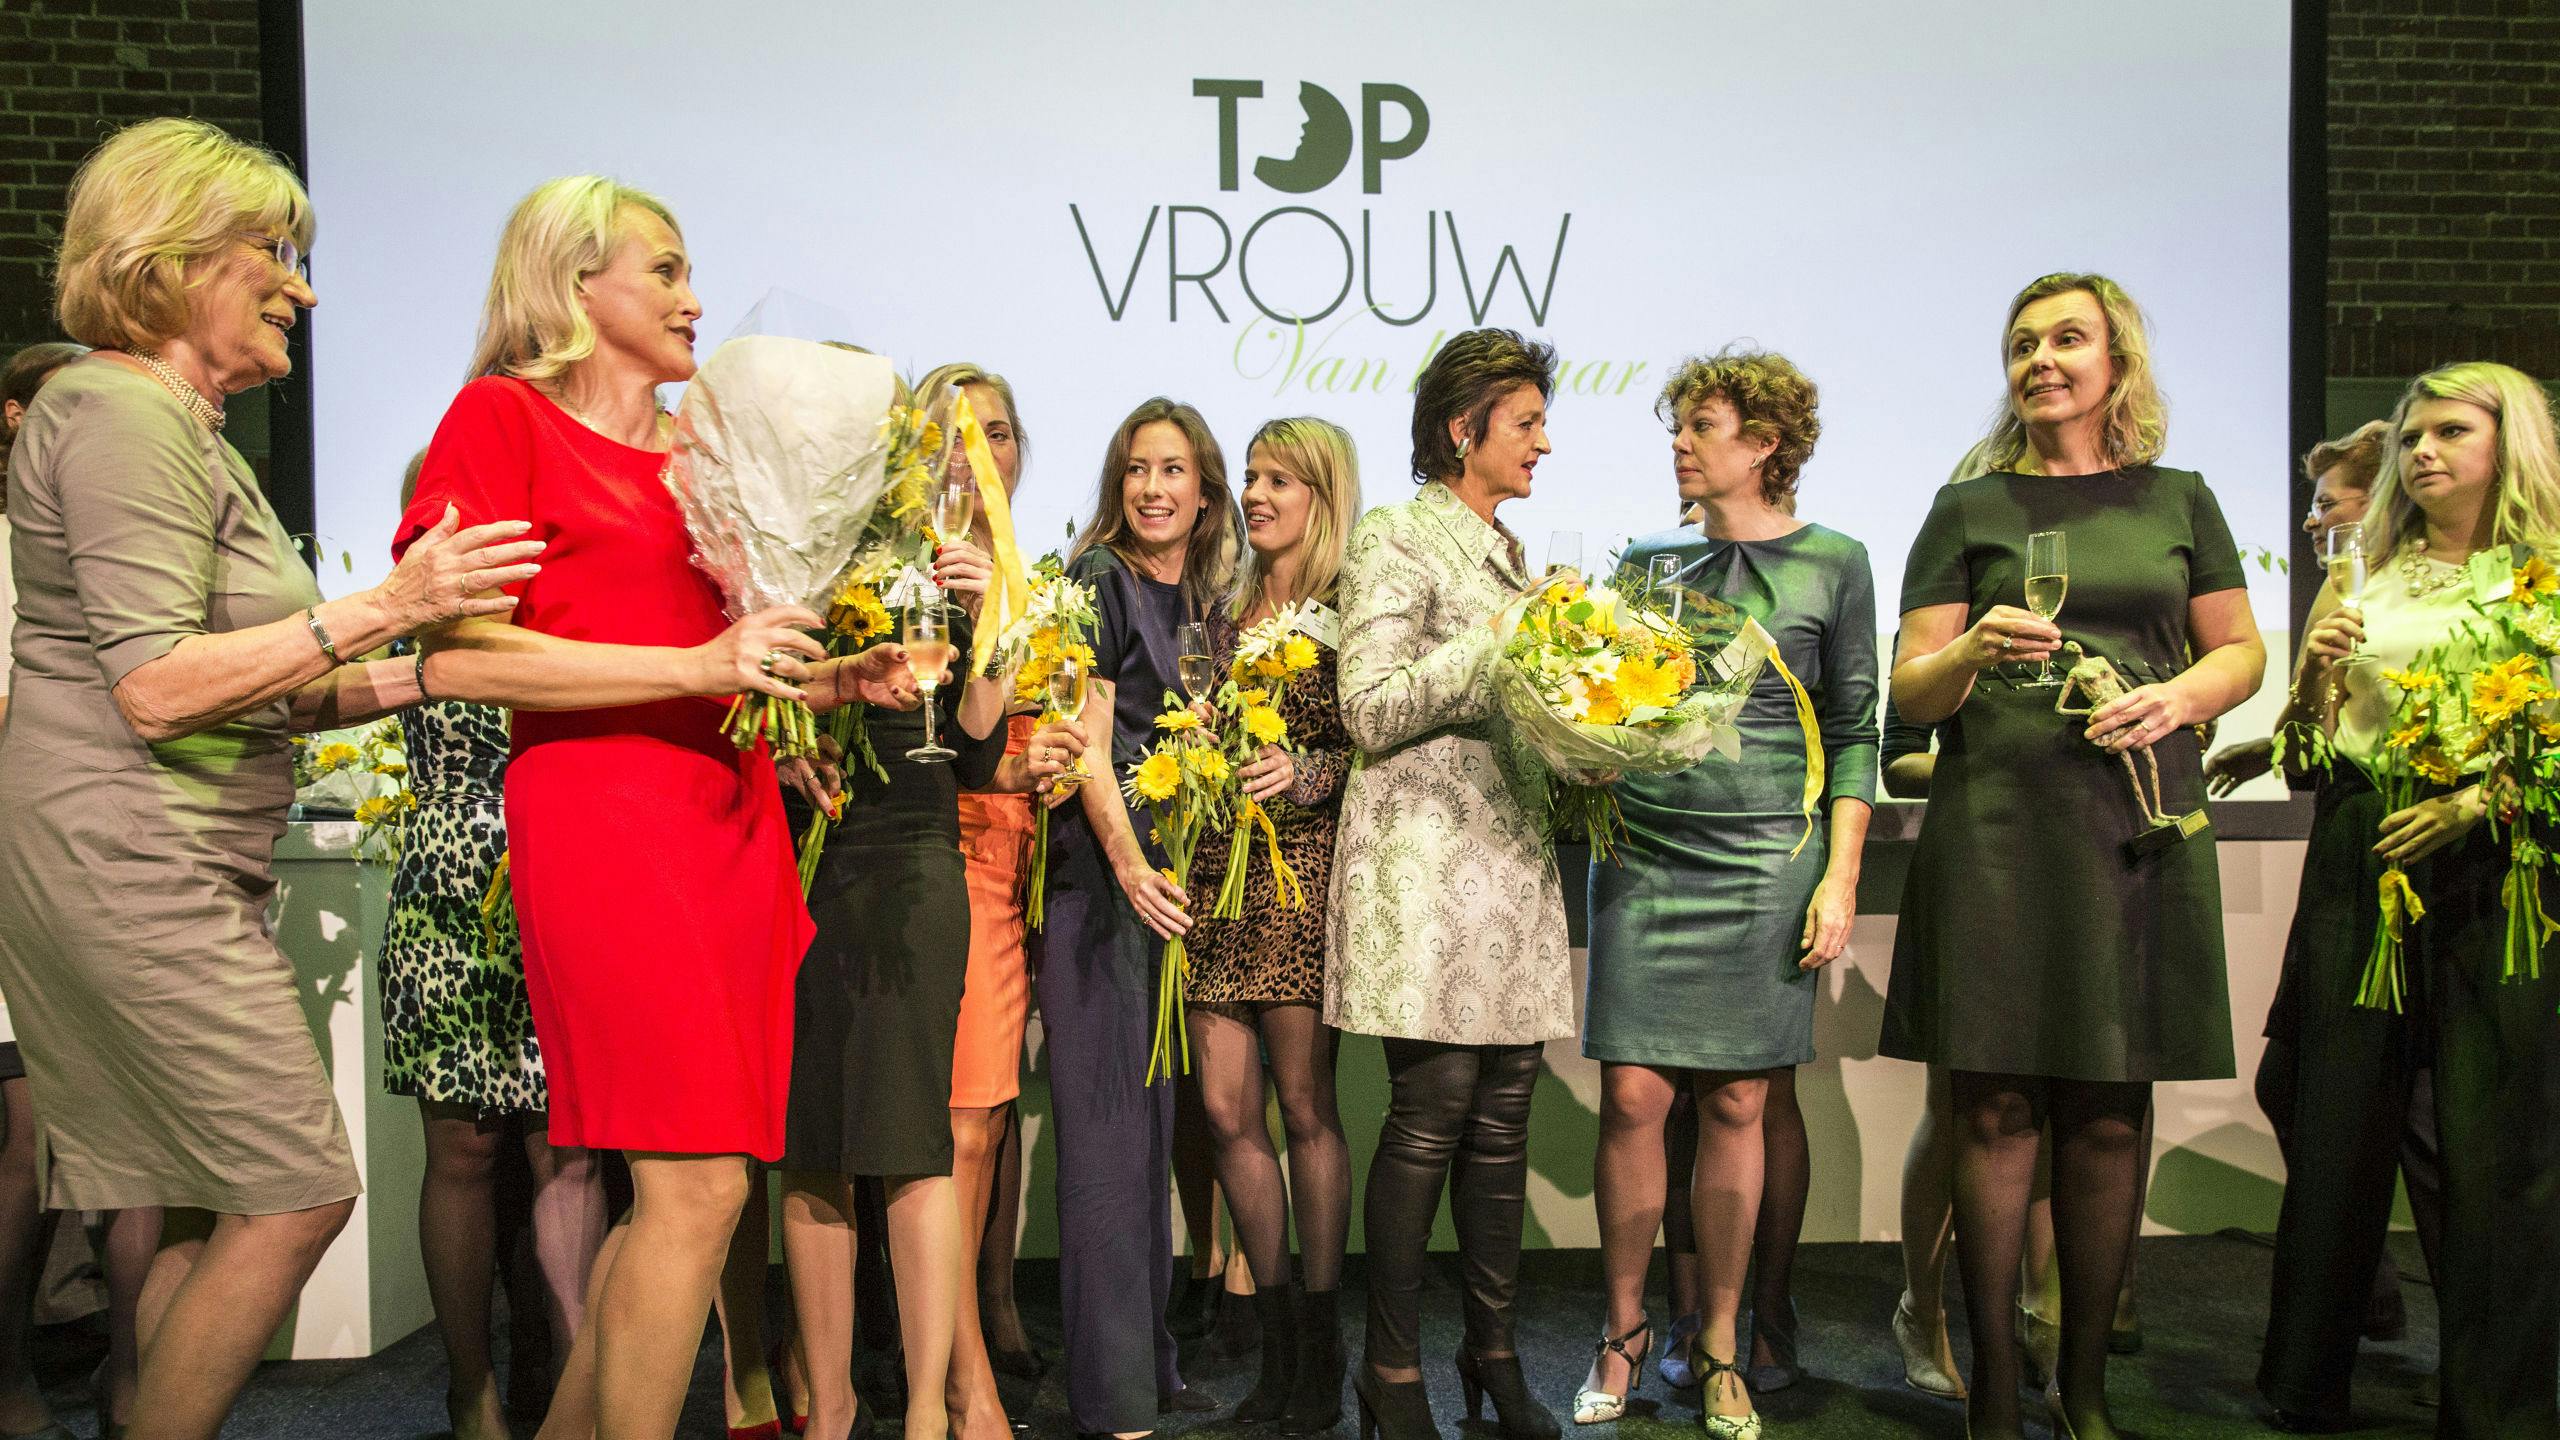 Topvrouwen bij de Topvrouw van het jaar 2017 verkiezing.